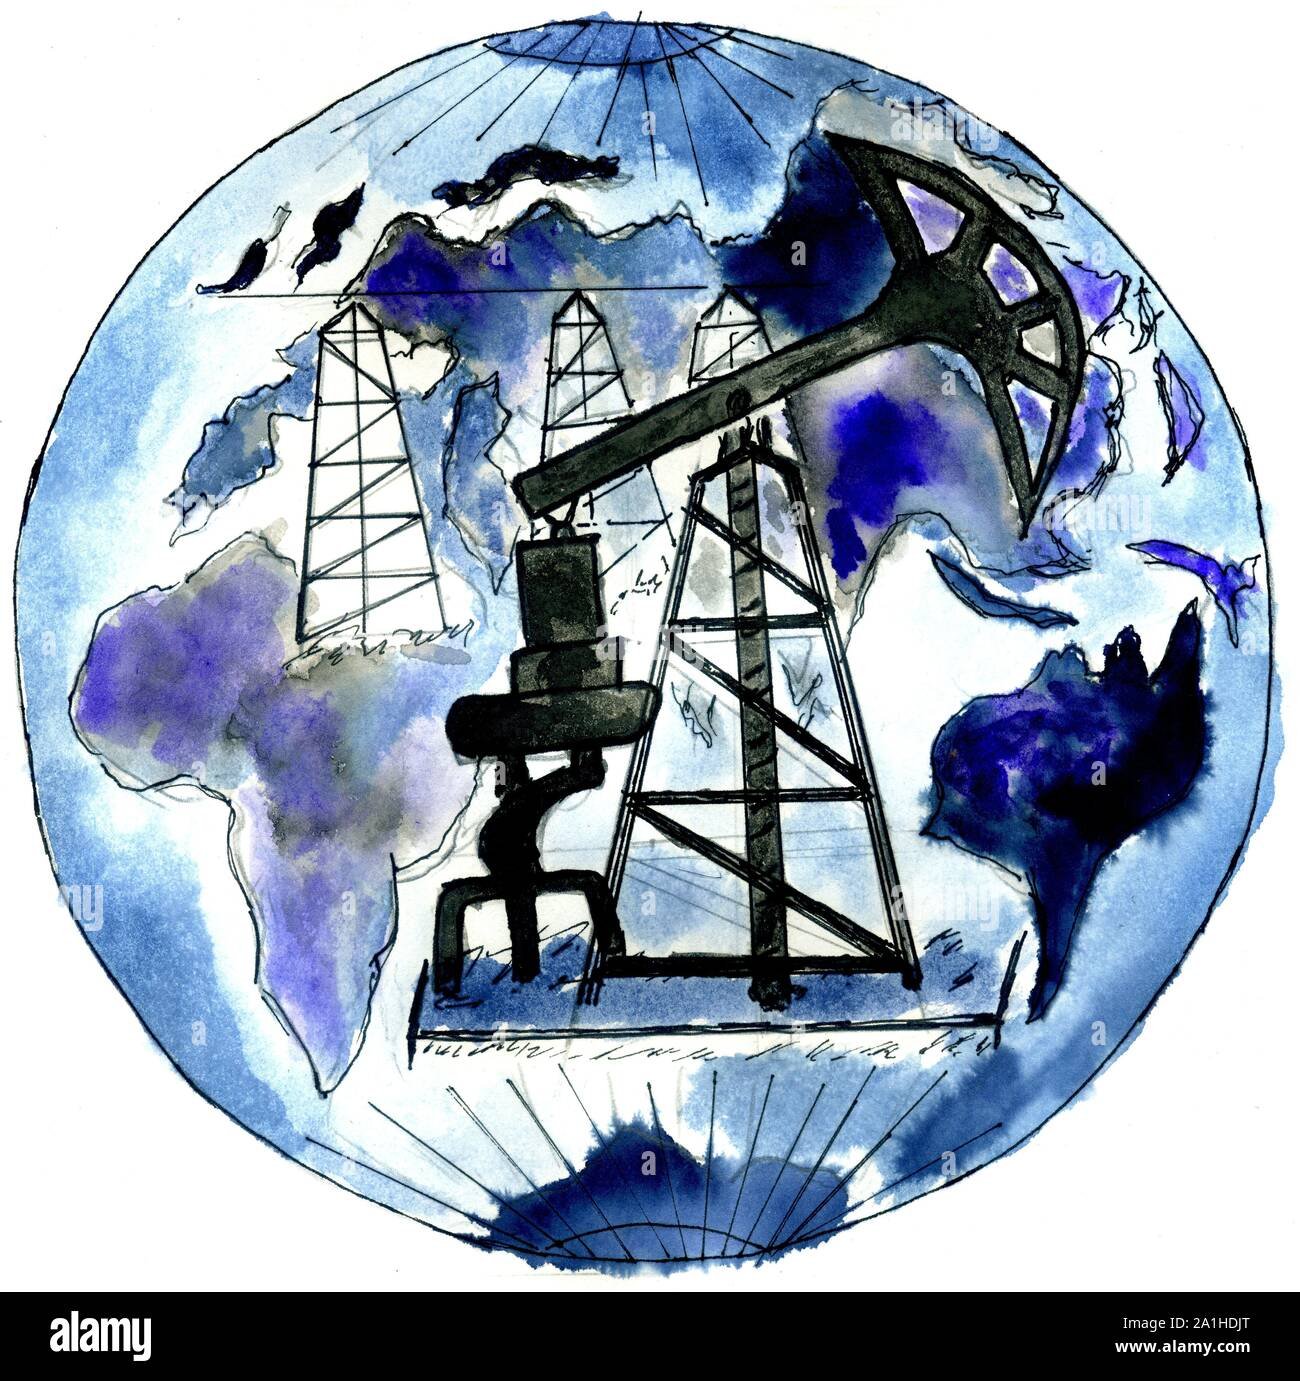 Символы Нефтяников